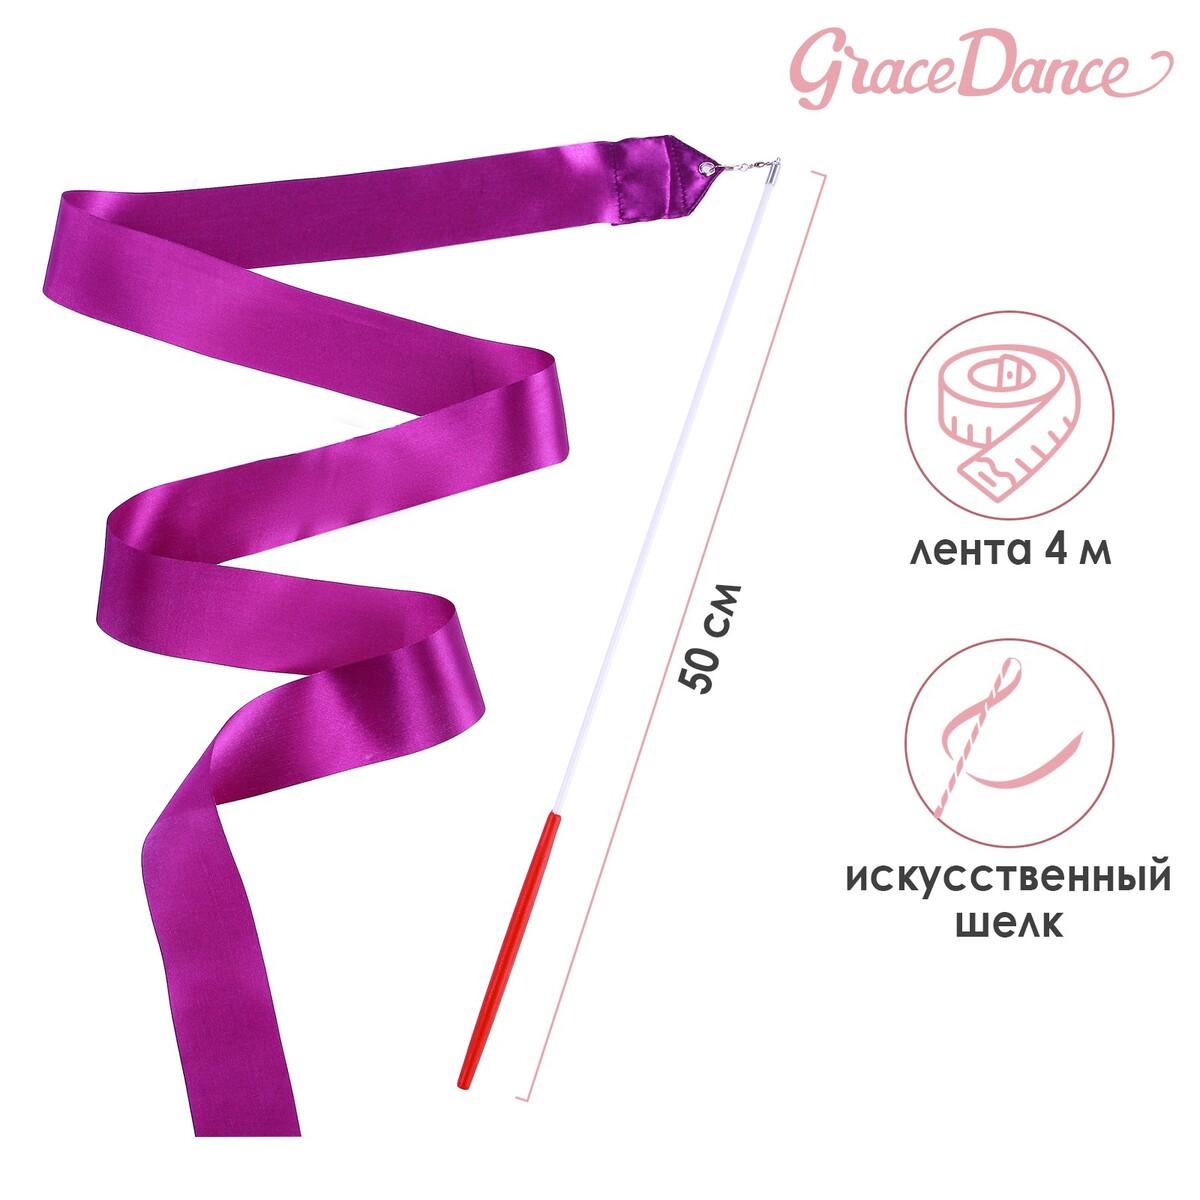 Лента для художественной гимнастики с палочкой grace dance, 4 м, цвет фиолетовый лента гимнастическая с палочкой grace dance 4 м оранжевый